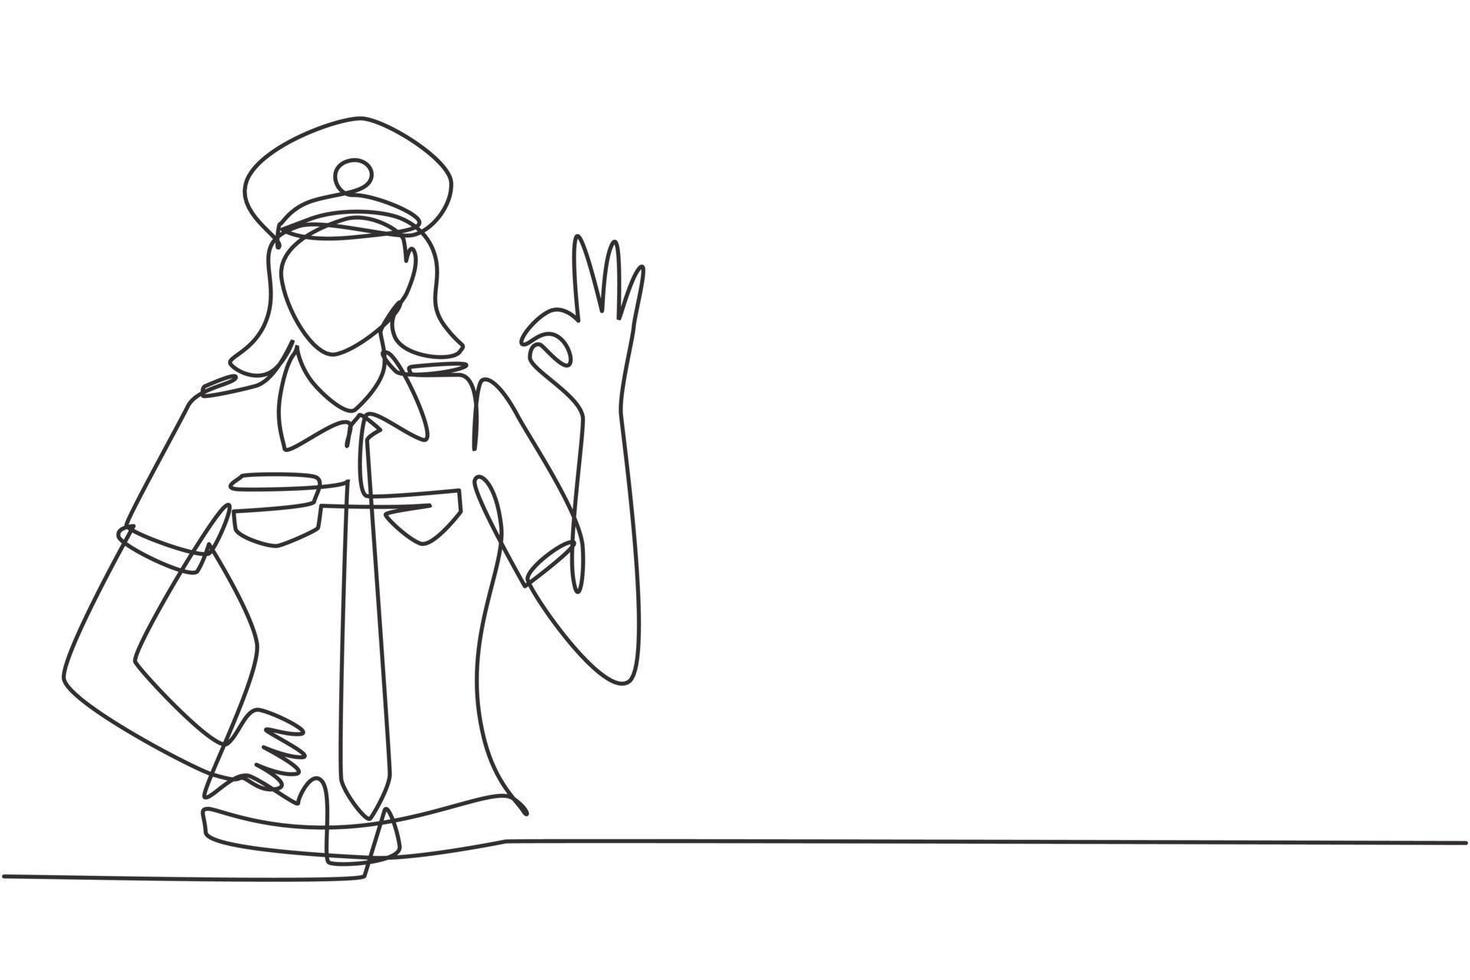 piloto femenino de dibujo de línea continua única con gesto bien y uniforme listo para volar con tripulación de cabina en aviones en el aeropuerto internacional. Ilustración de vector de diseño gráfico de dibujo de una línea dinámica